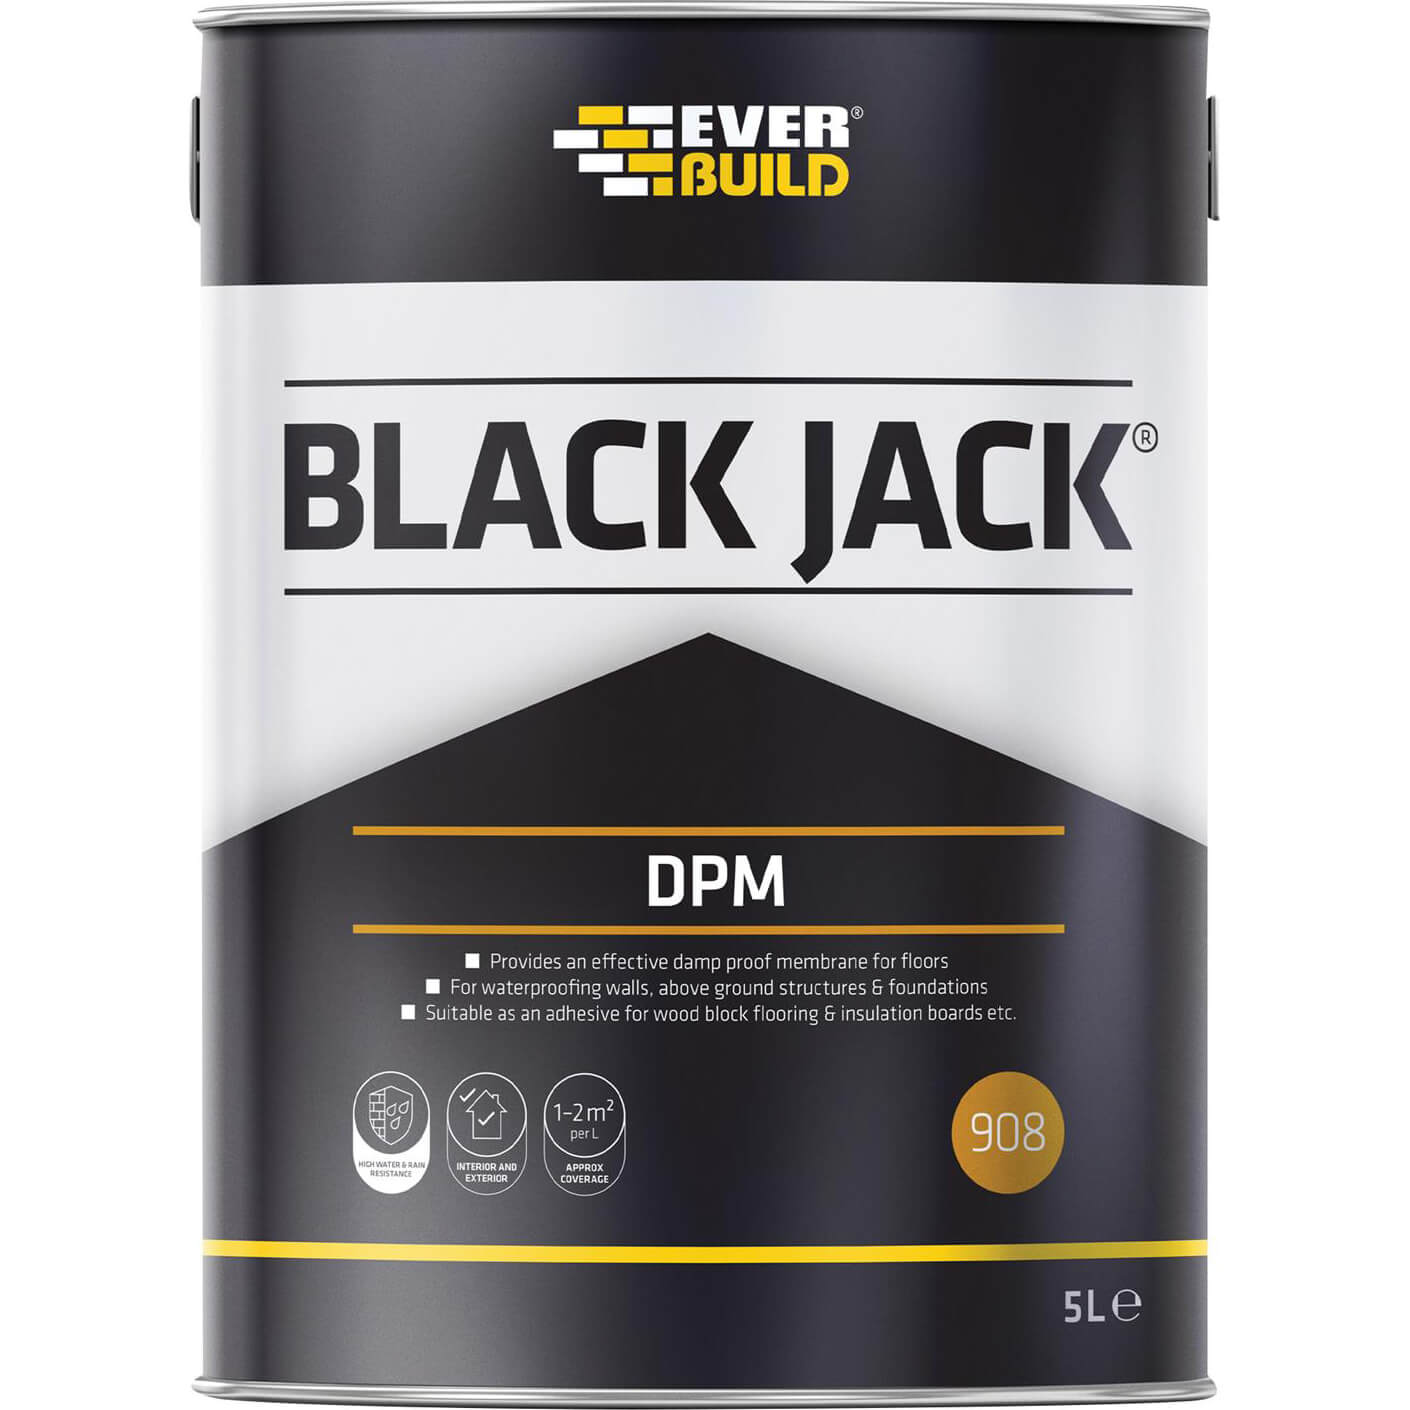 Image of Everbuild Black Jack 908 DPM Damp Proof Membrane 5l